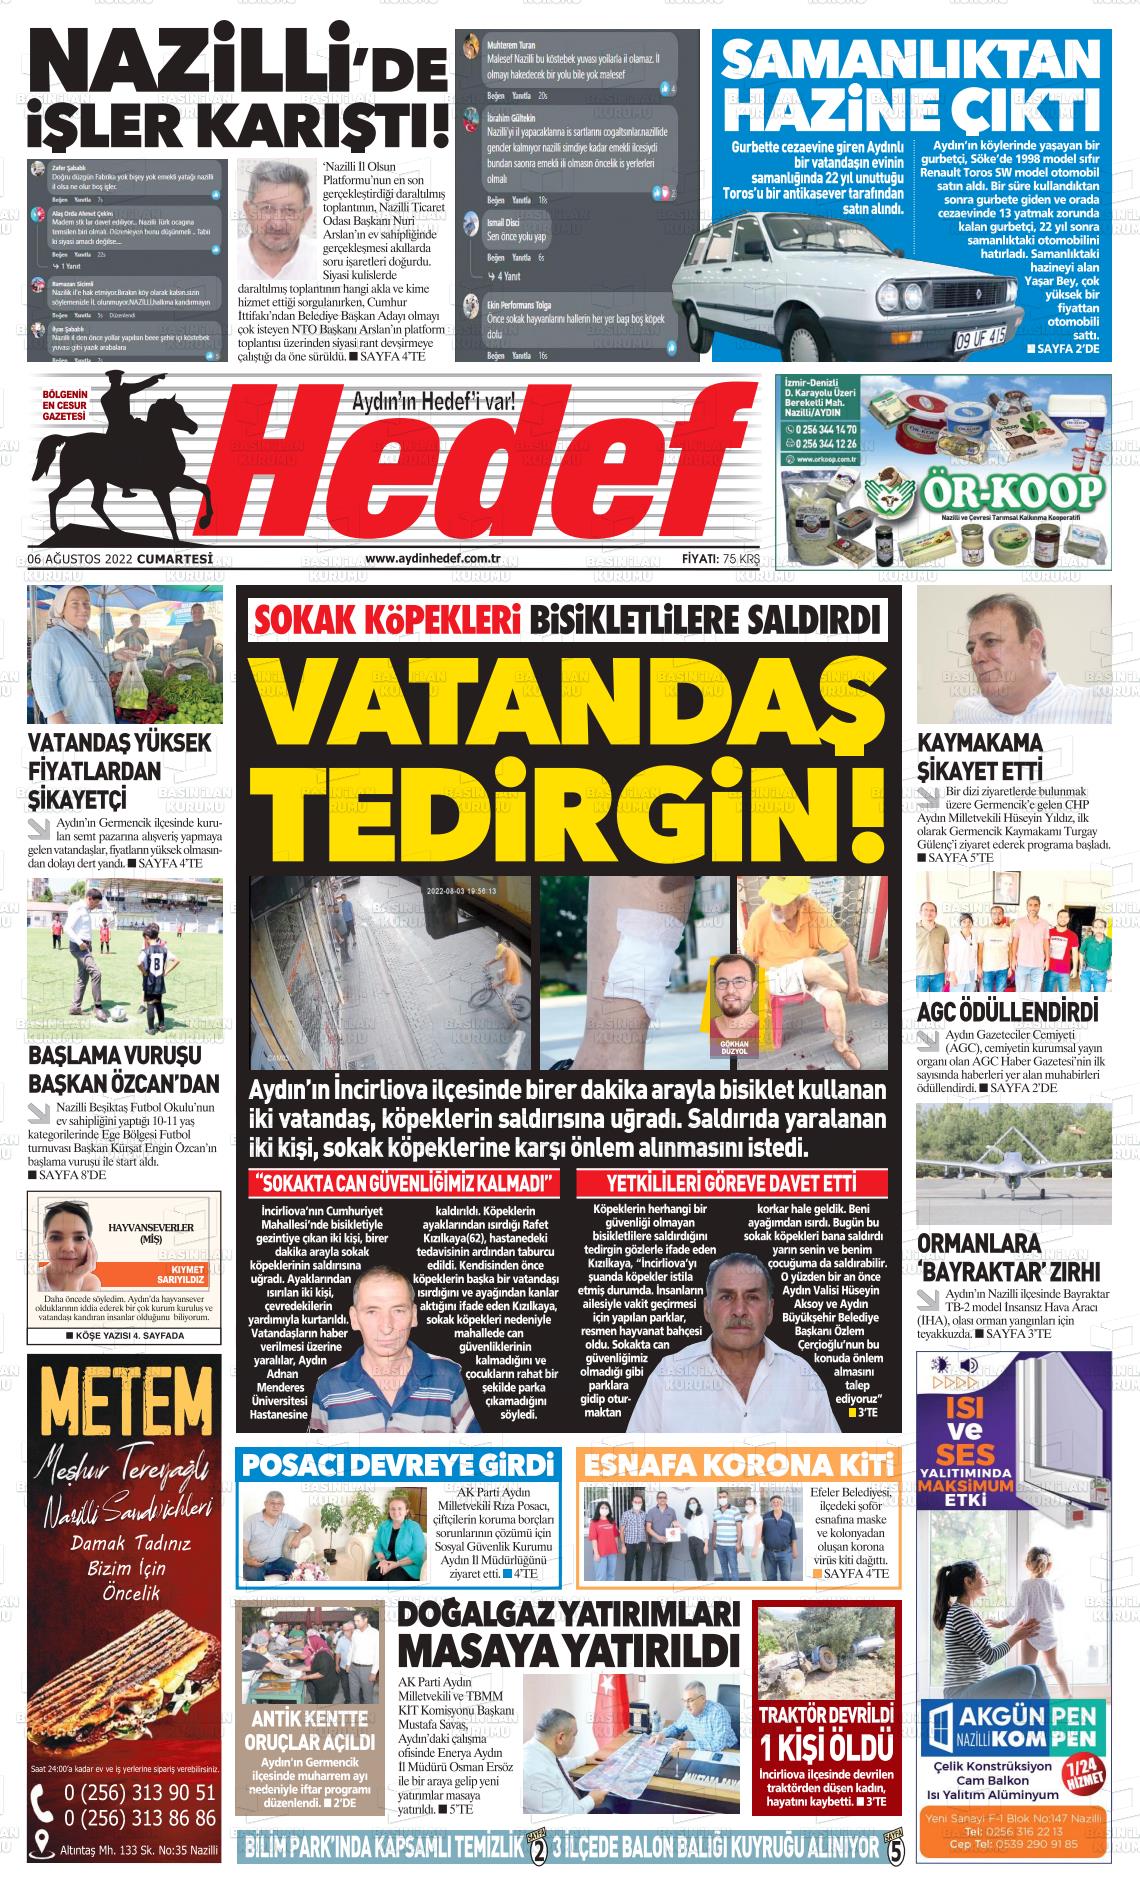 06 Ağustos 2022 Aydın Hedef Gazete Manşeti